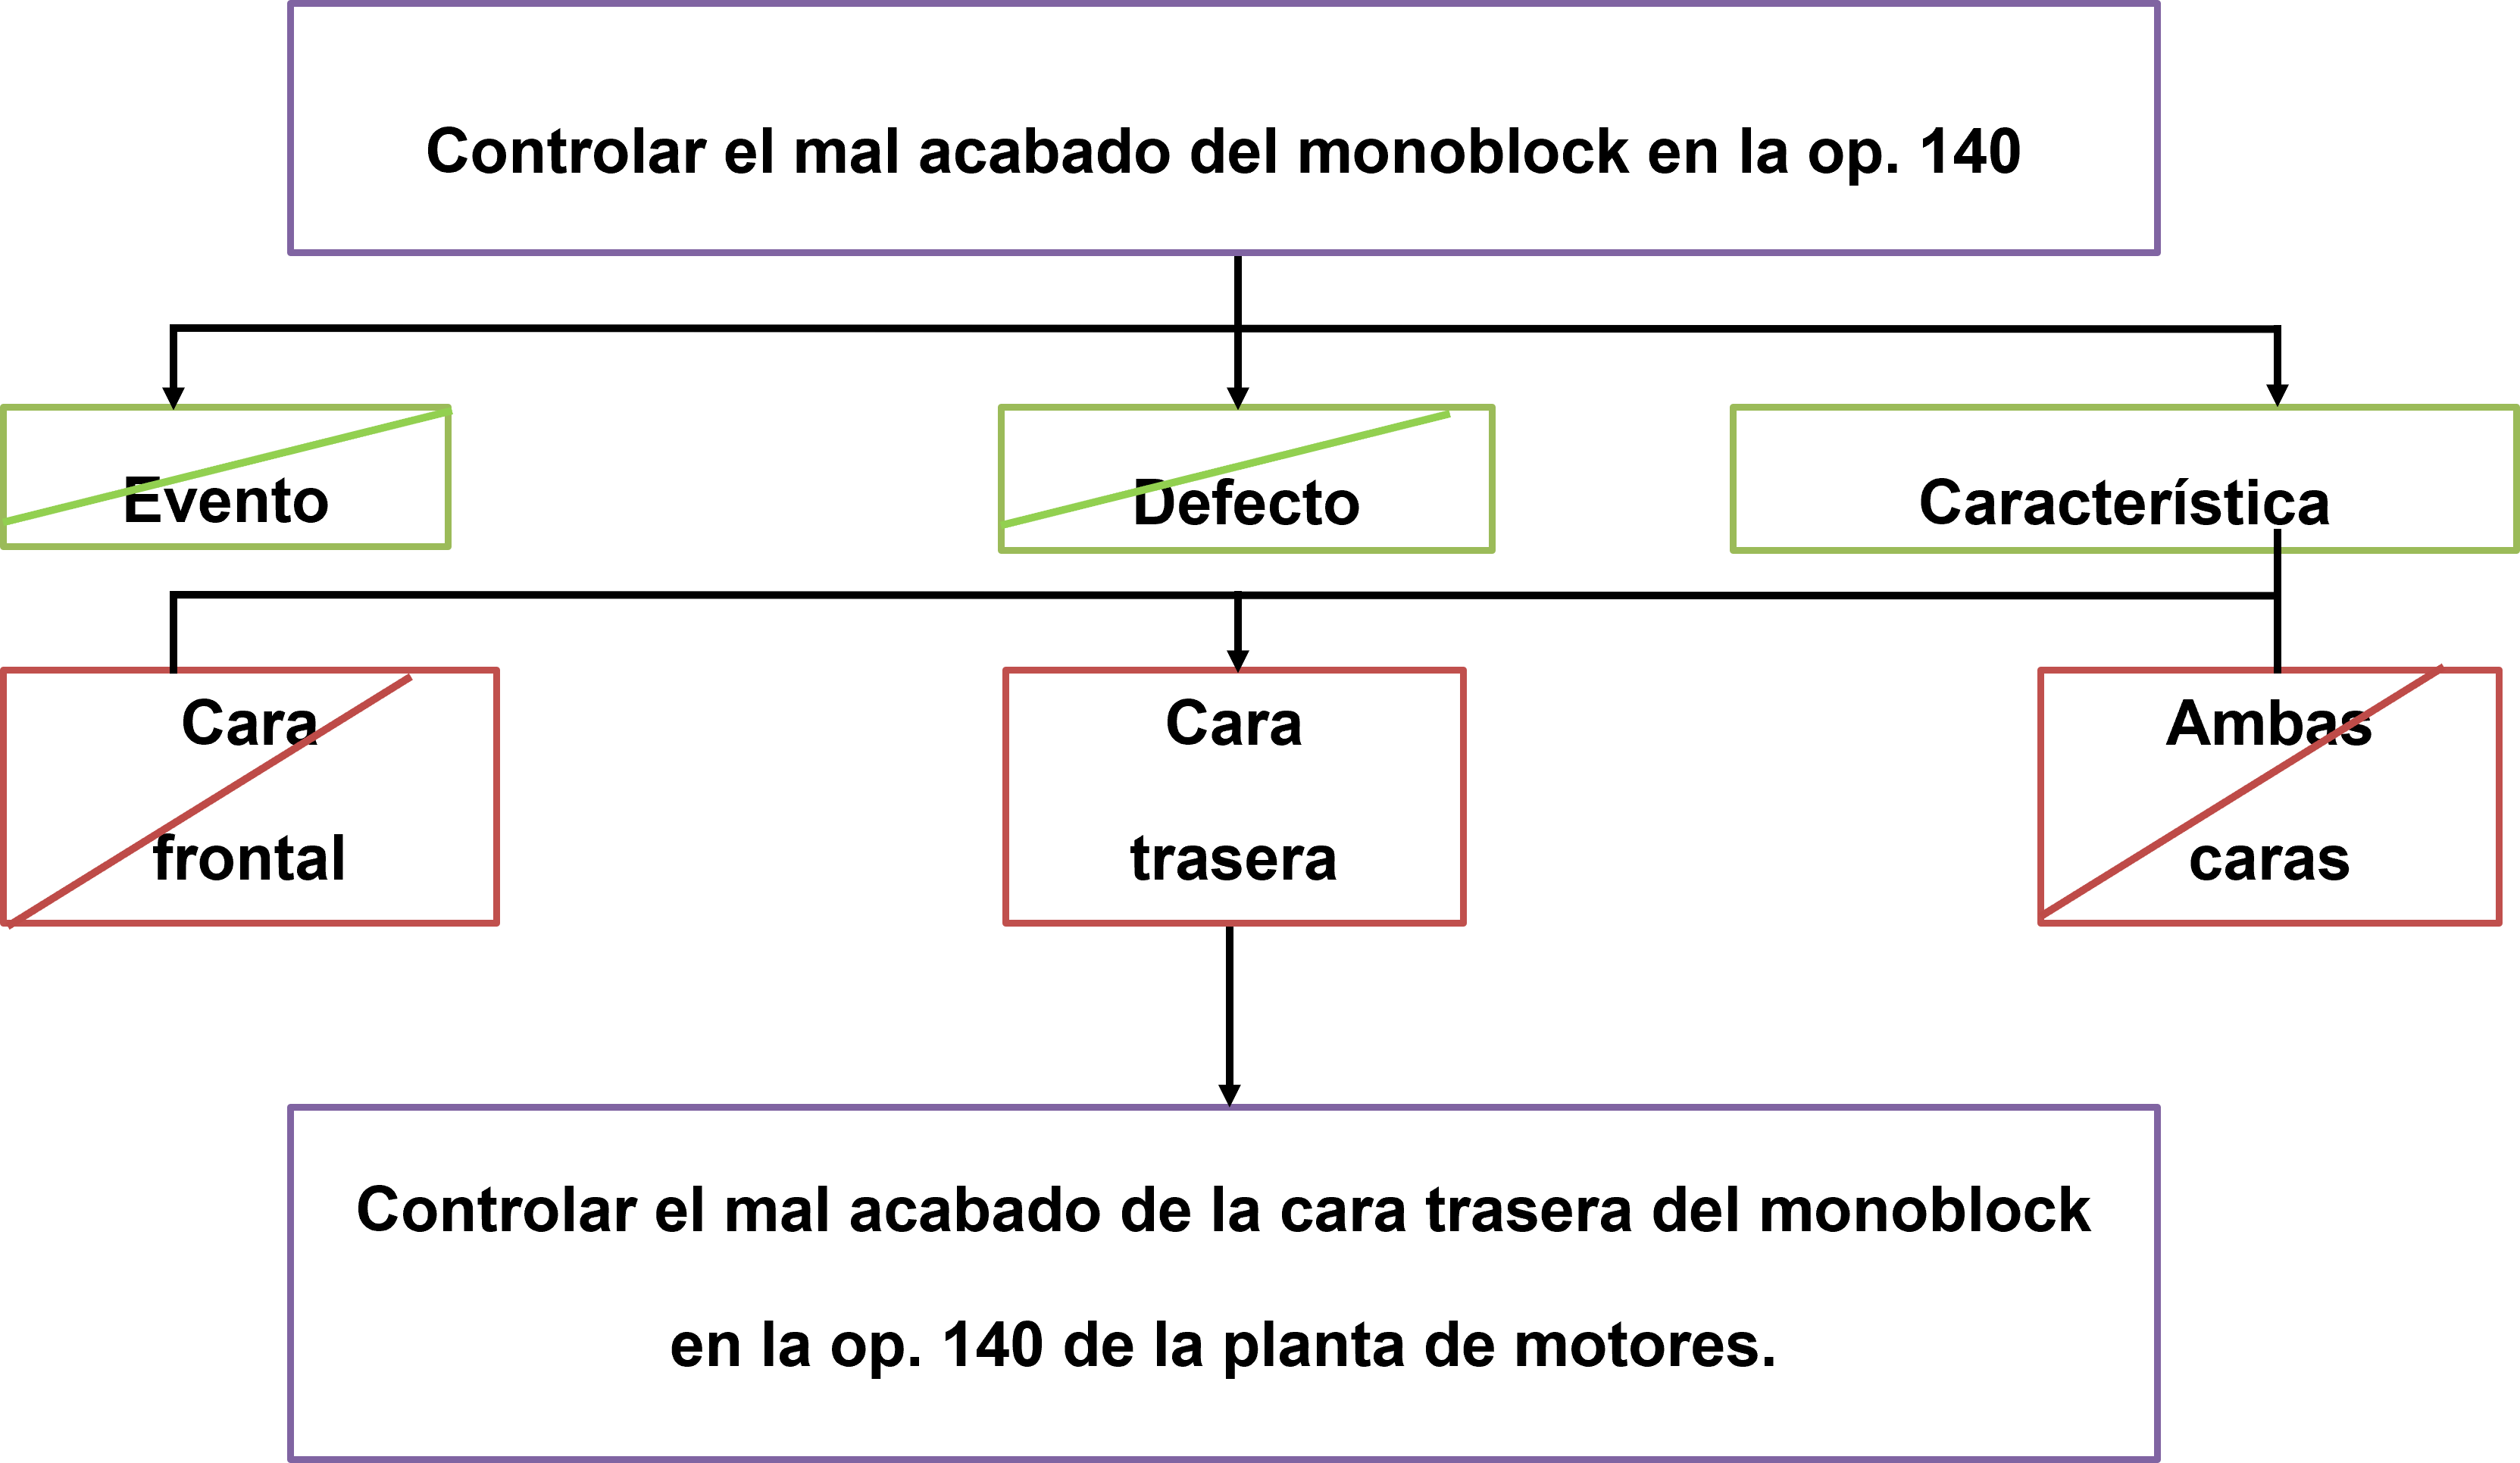 Figura 1. Resultados de las consecuencias del mal acabado del monoblock en la op. 140. Elaboración propia.